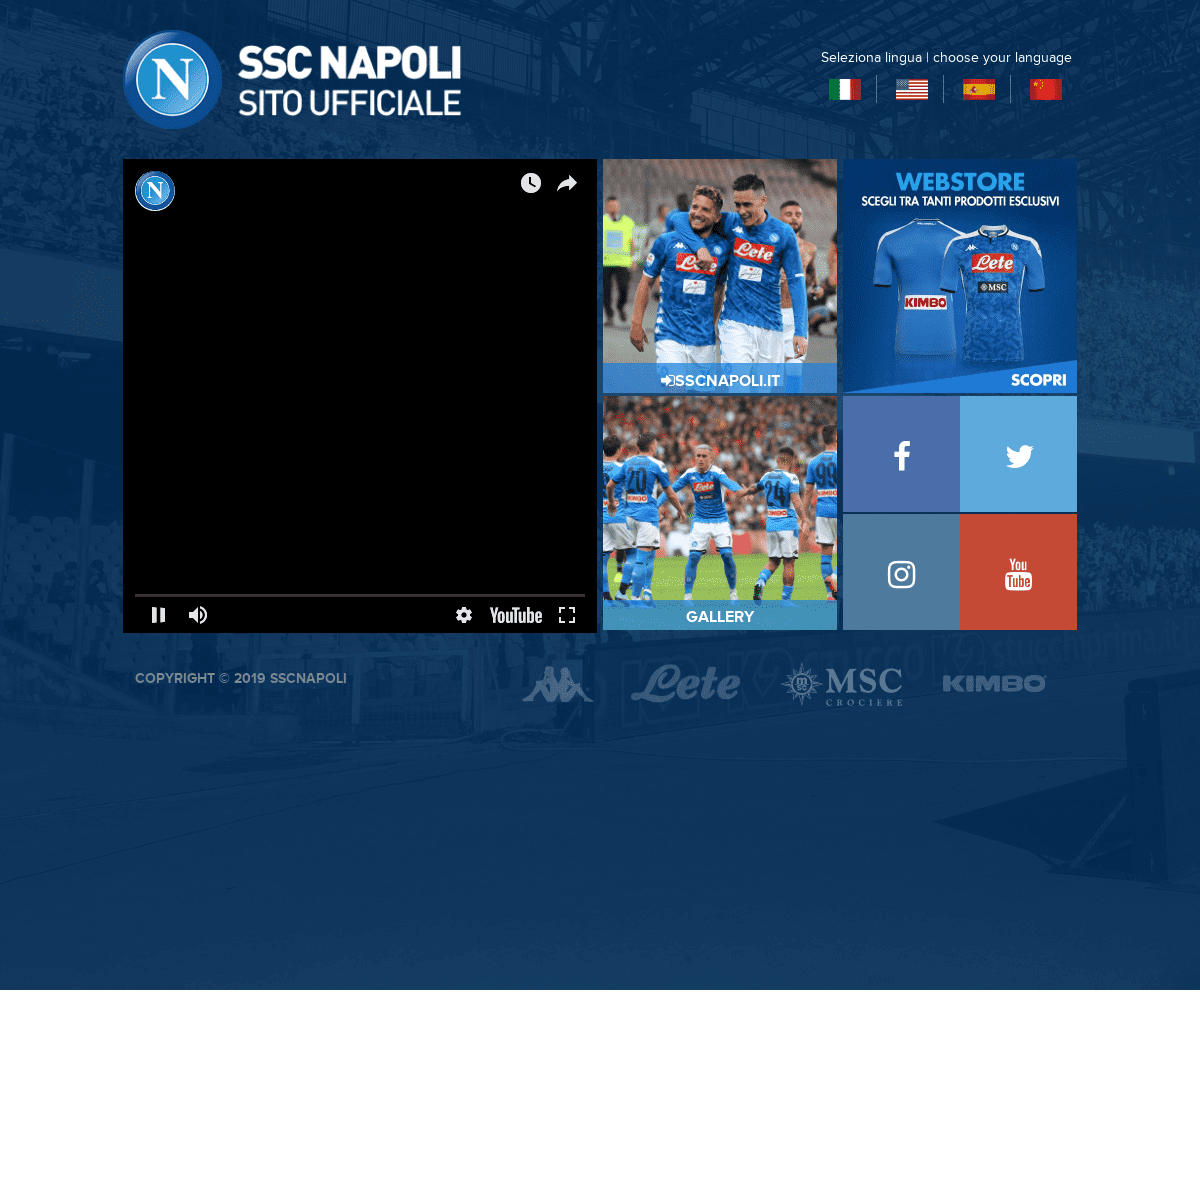 SSC Napoli - Sito ufficiale